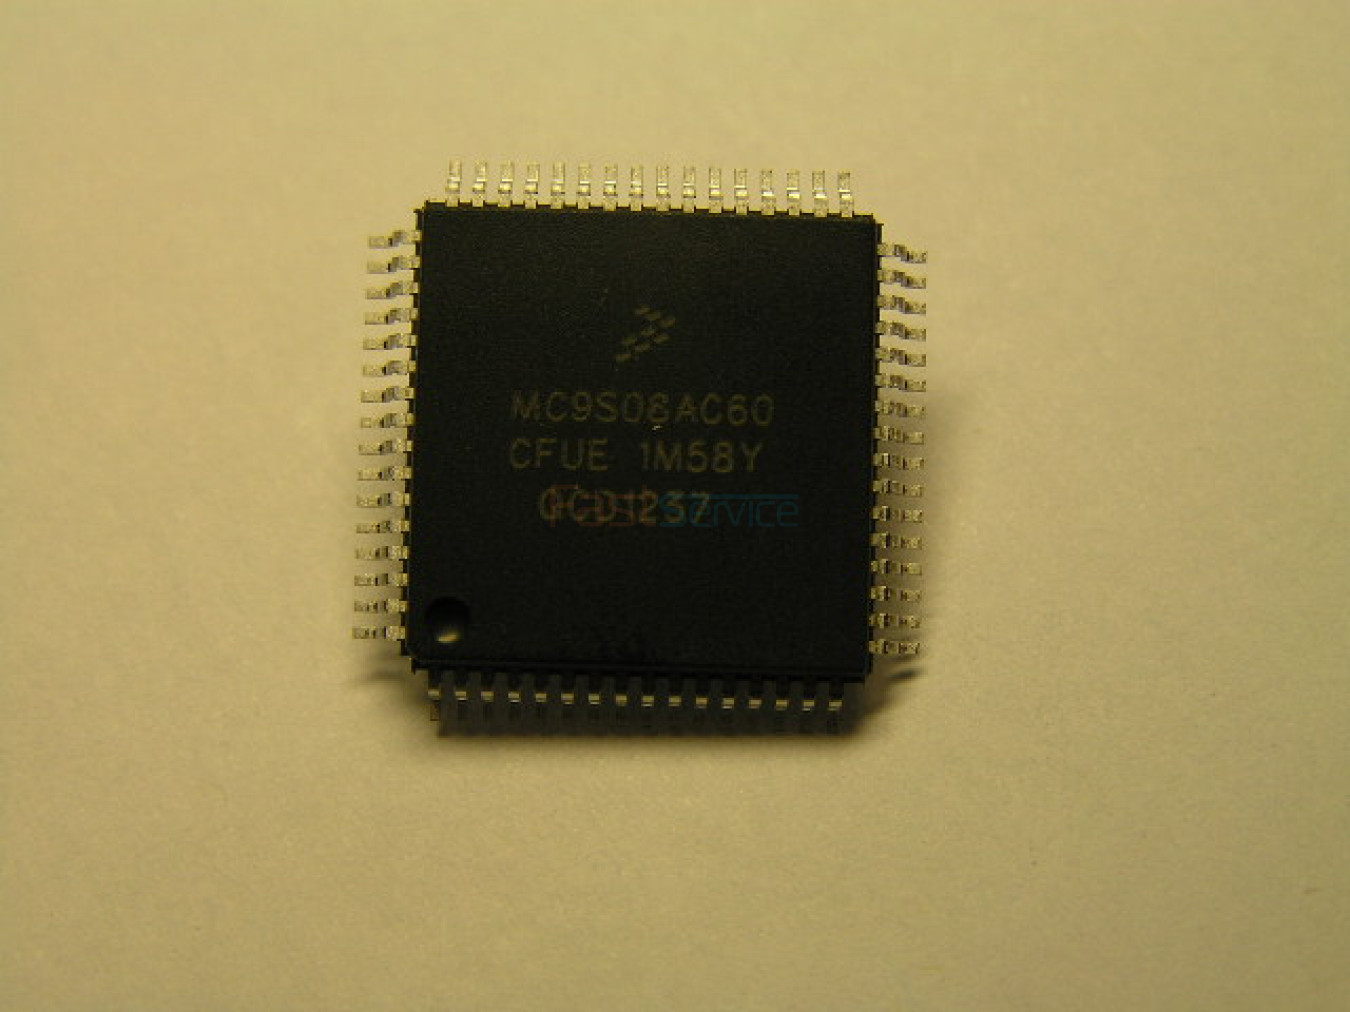 Процессор на СМА ZANUSSI ELECTROLUX (EWM1100, EWM2100 и др) MC9S08AC60 прошитый